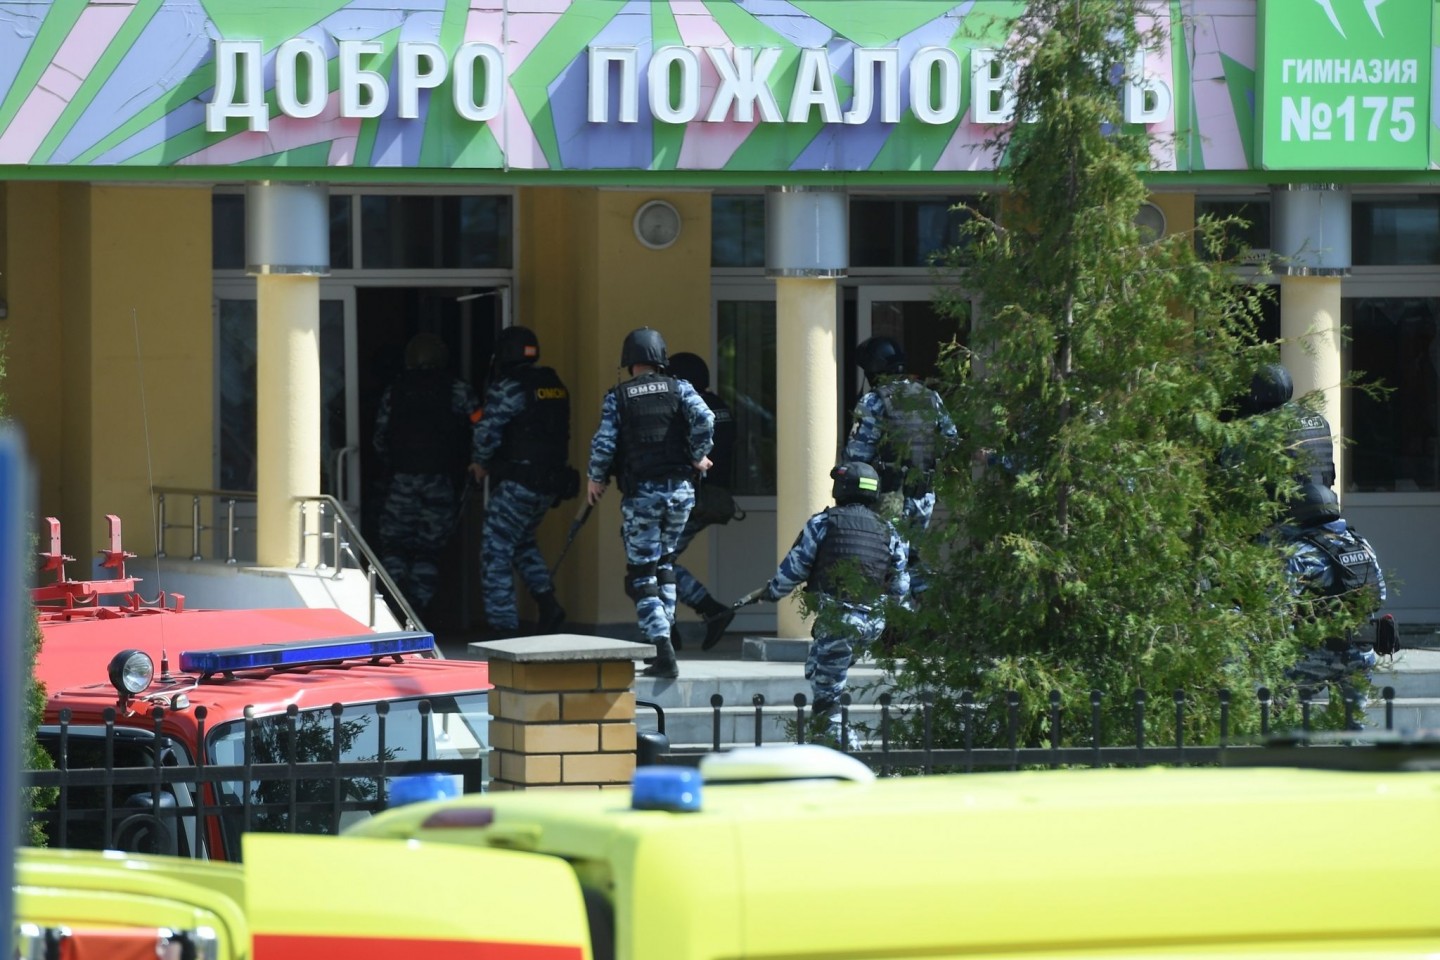 Rettungswagen und Polizeifahrzeuge mit Blaulicht und Sirene: der Tatort in der russischen Stadt Kasan nach dem tödlichen Angriff.